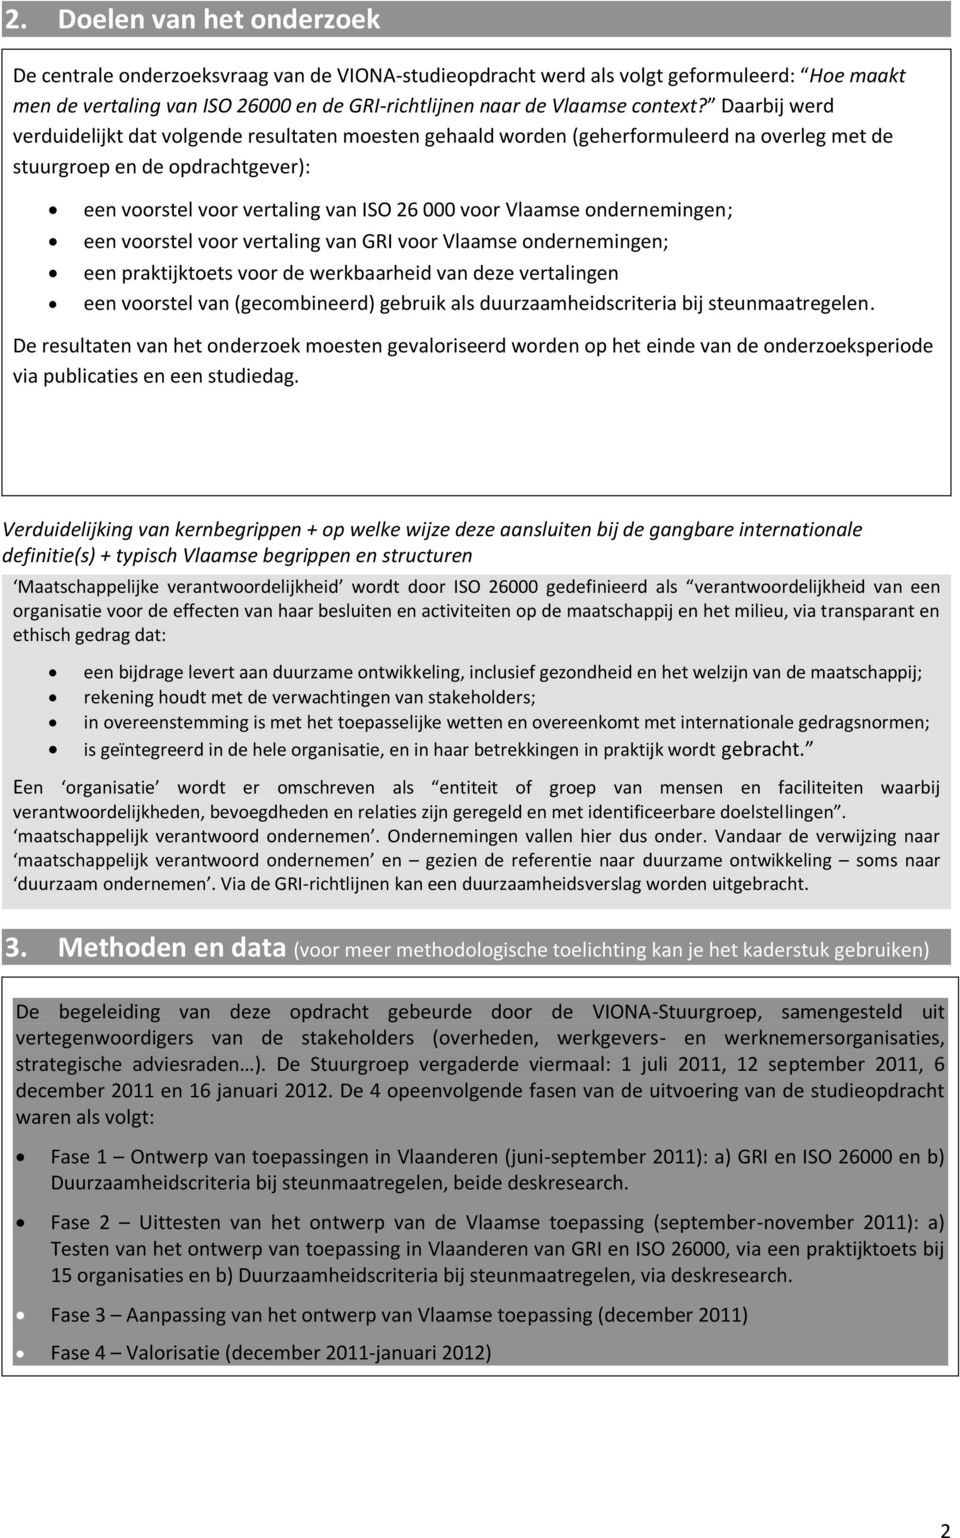 ondernemingen; een voorstel voor vertaling van GRI voor Vlaamse ondernemingen; een praktijktoets voor de werkbaarheid van deze vertalingen een voorstel van (gecombineerd) gebruik als